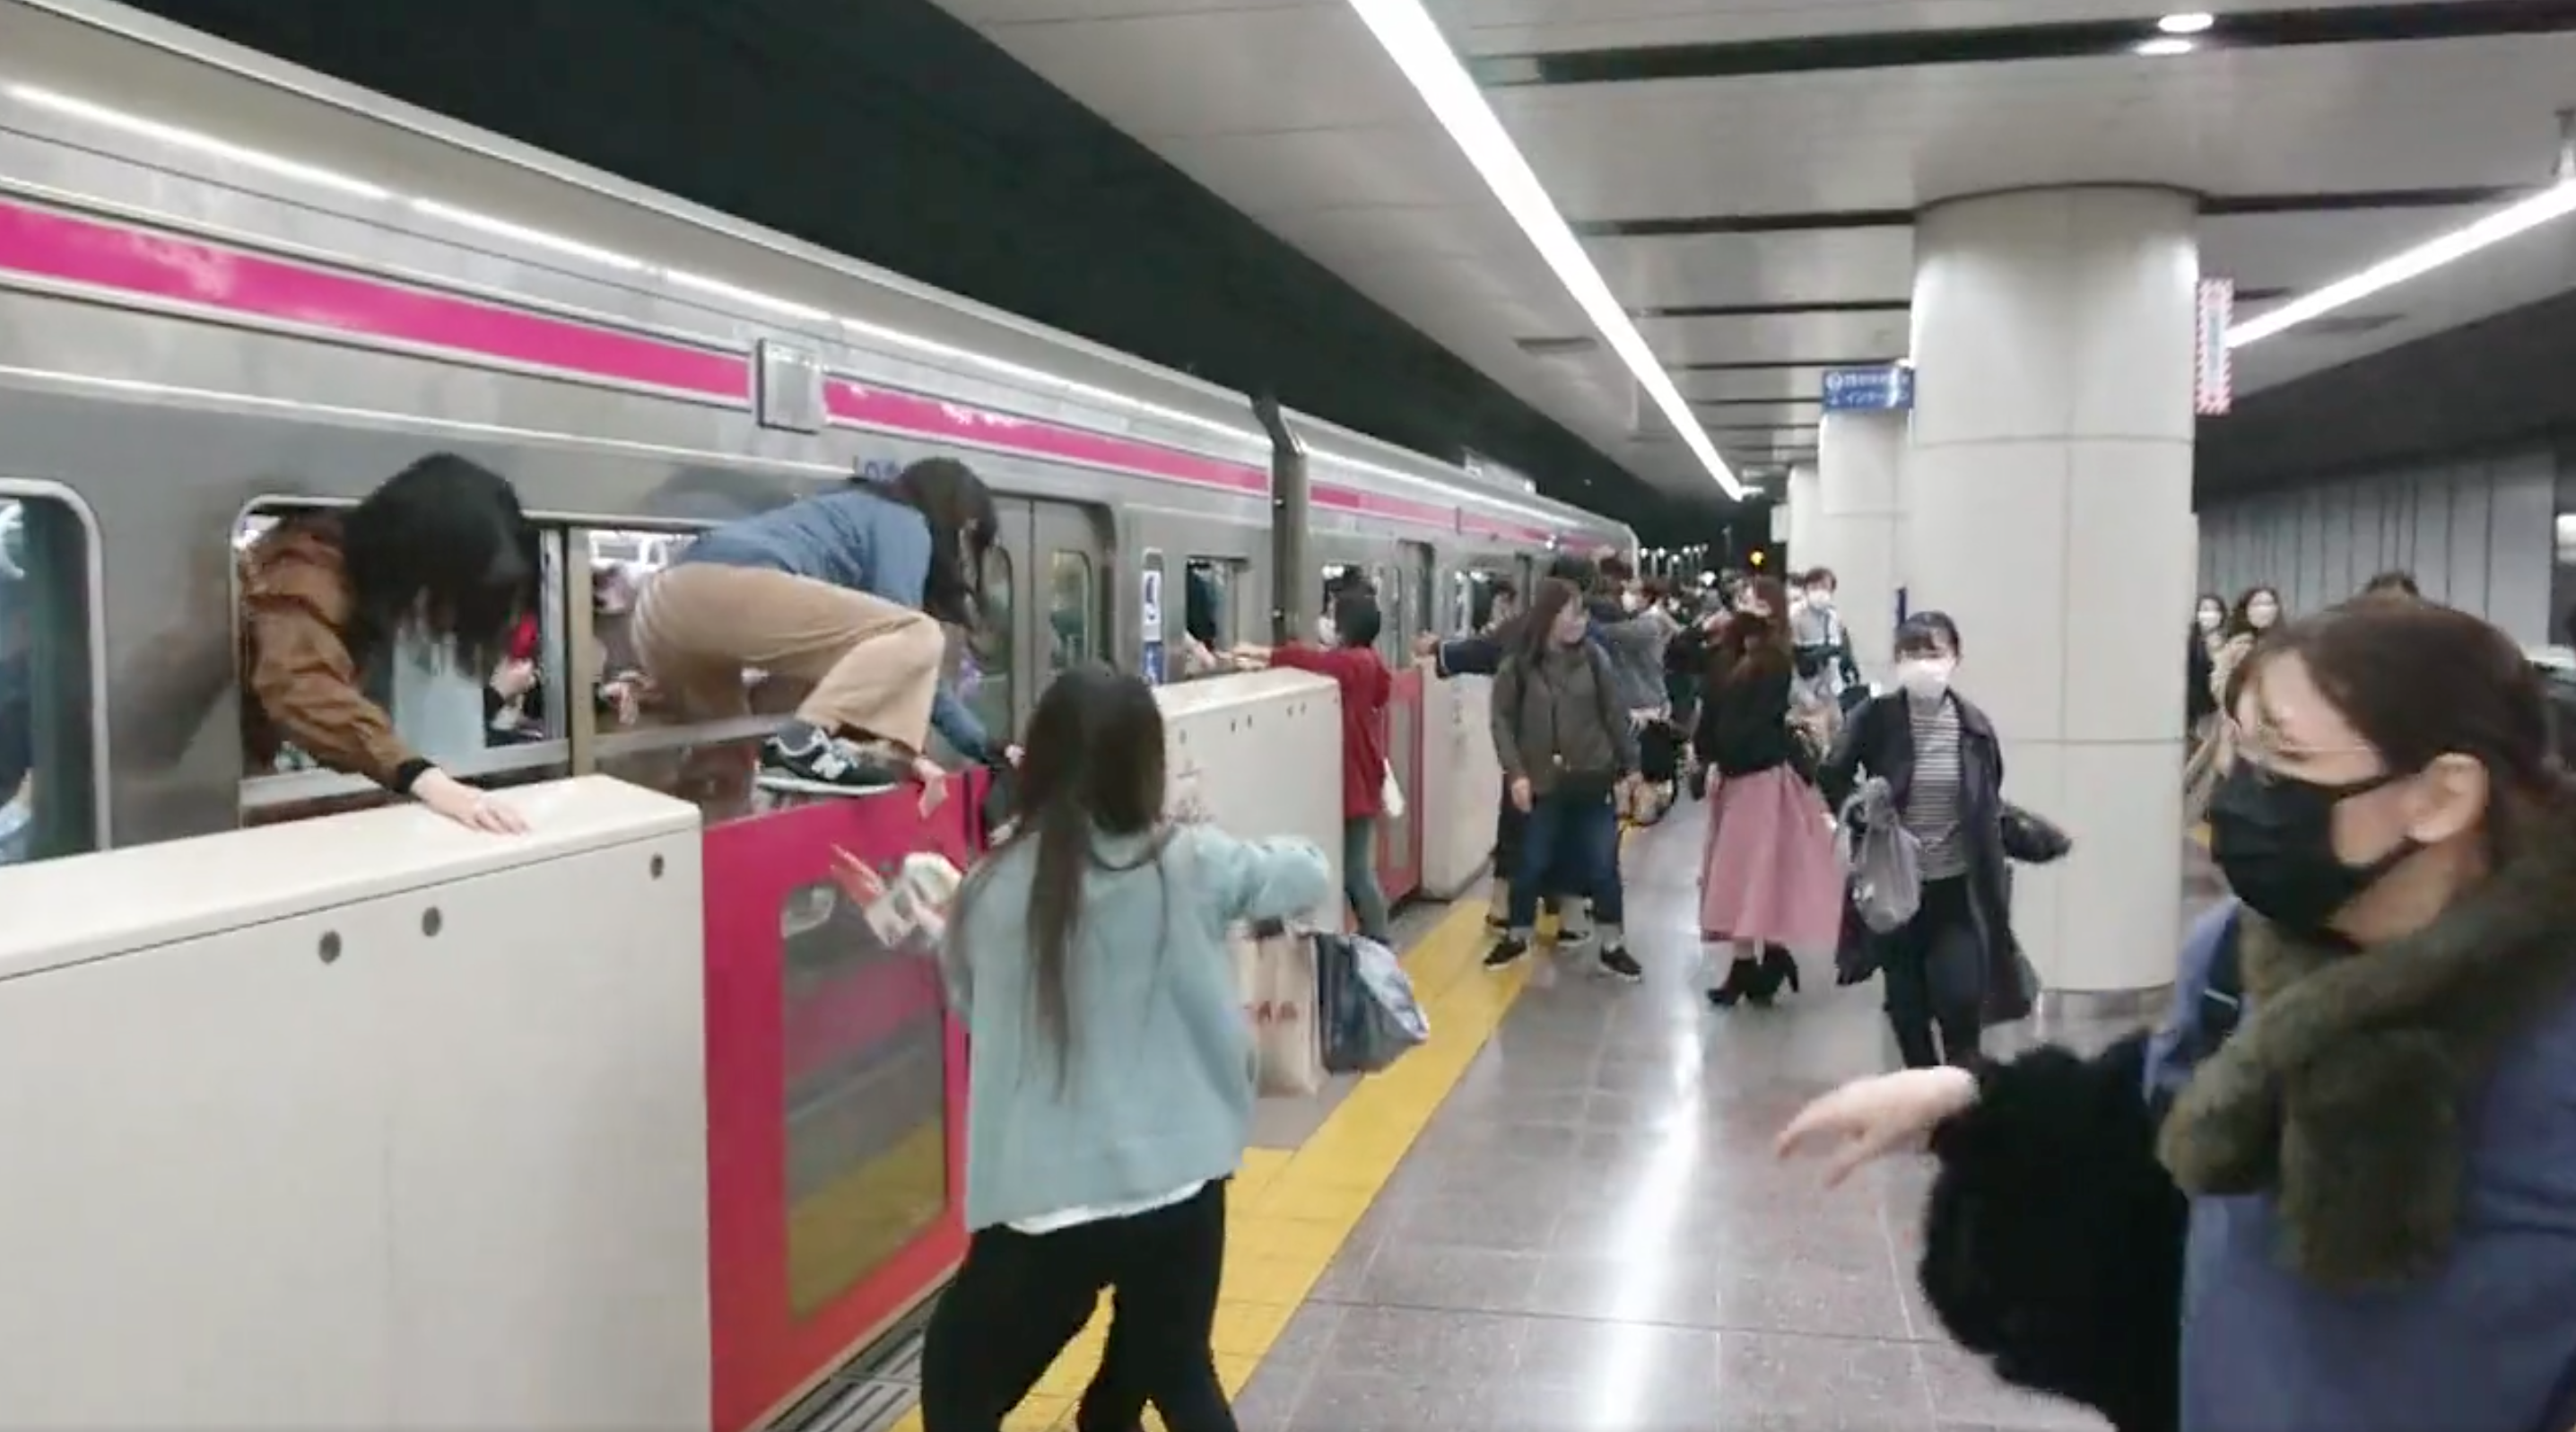 Legalább 15 ember megsérült egy késes támadásban a tokiói metróban, ahol aztán tűz ütött ki